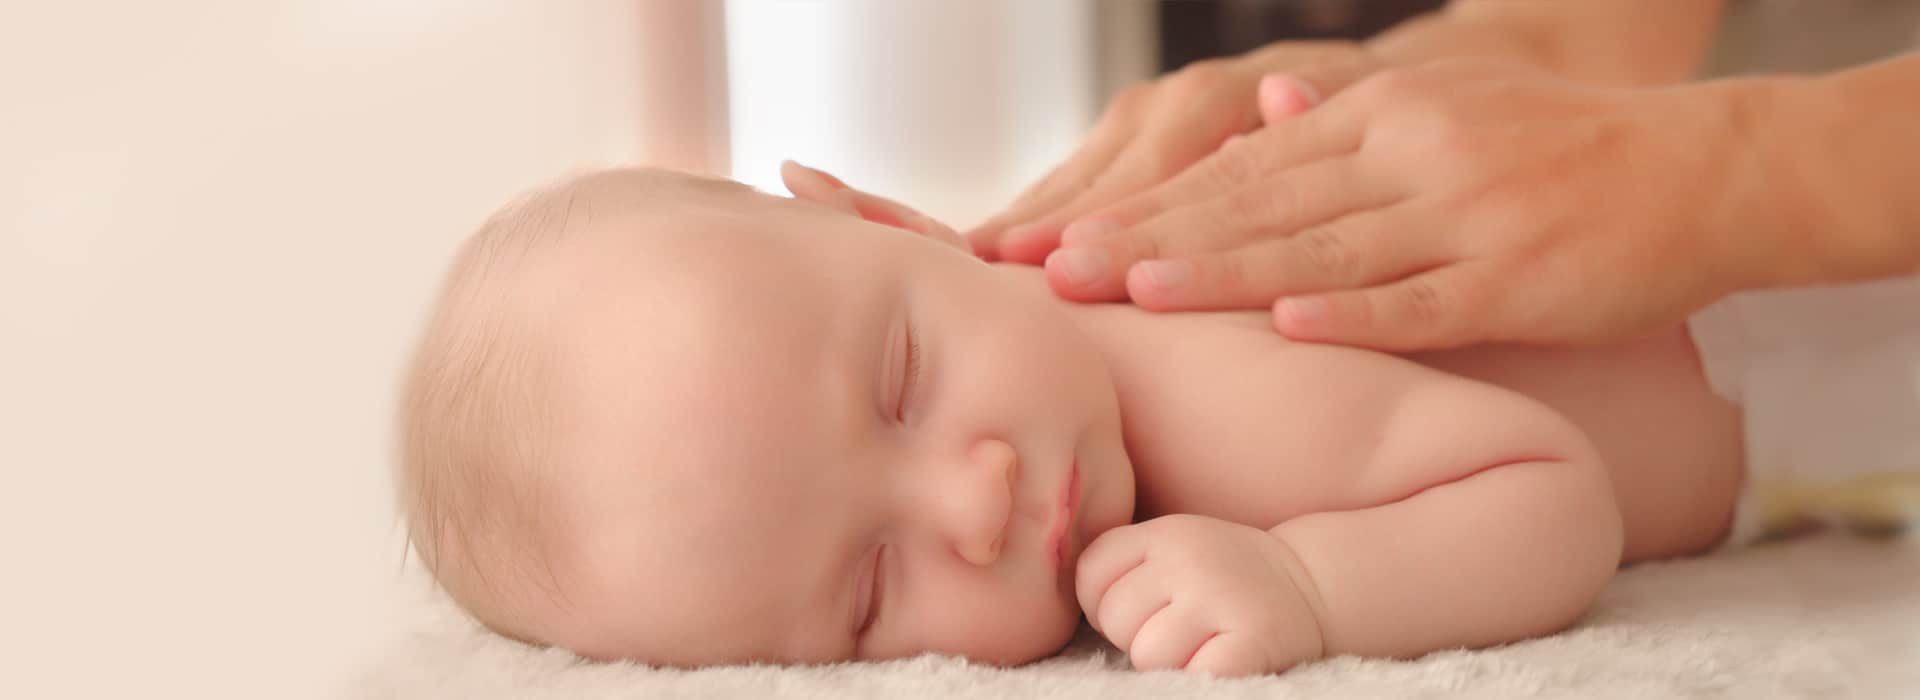 Massaggio neonatale: benefici, tecniche e prodotti.